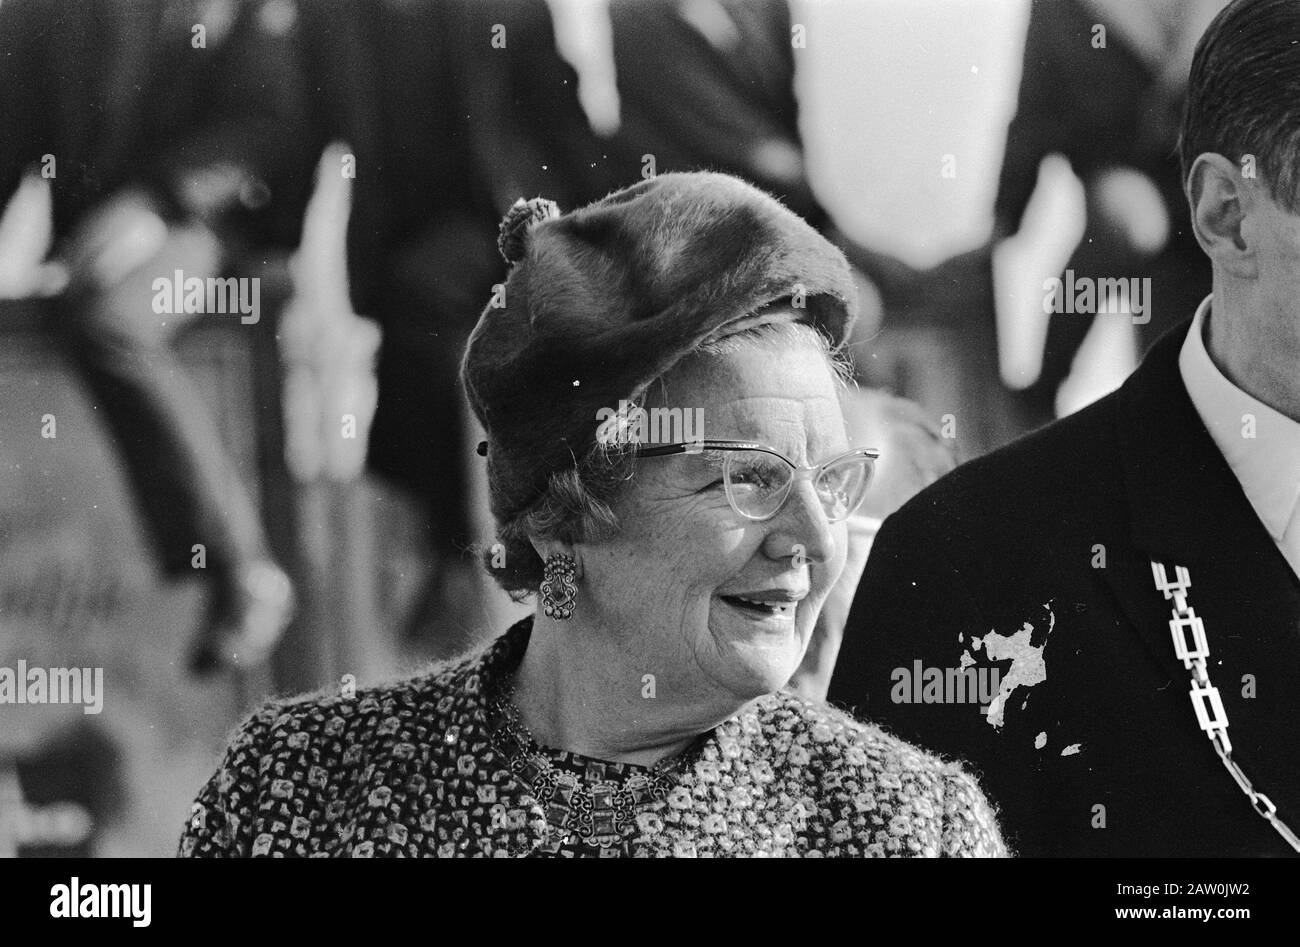 Queen Juliana visits the IJsselmeerpolders  Queen Juliana wearing a warm hat Date: November 8, 1967 Location: Emmeloord, IJsselmeerpolders Keywords: queens, hats Person Name: Juliana, queen Stock Photo